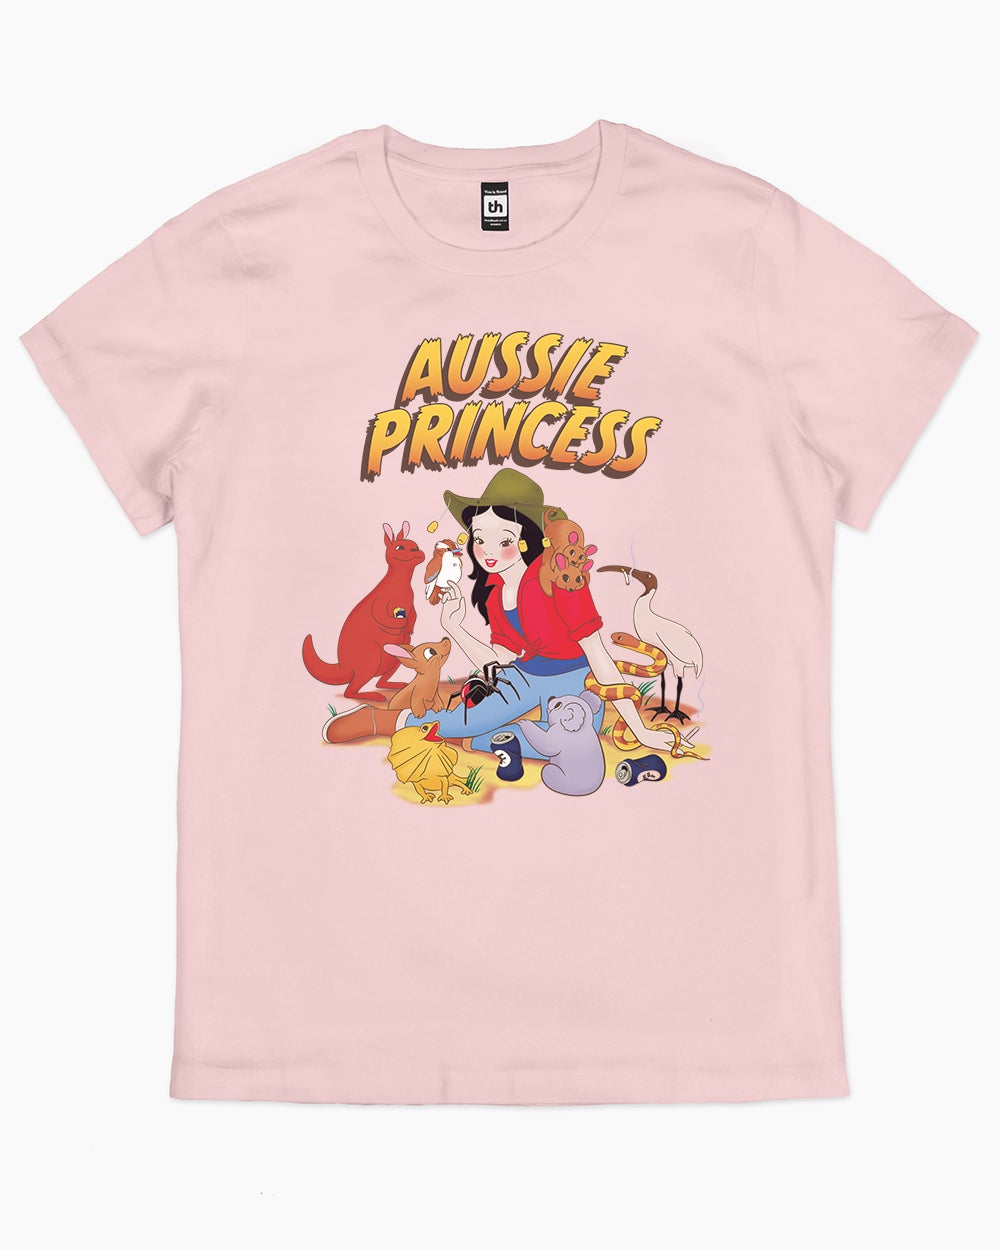 Aussie Princess T-Shirt Australia Online #colour_pink